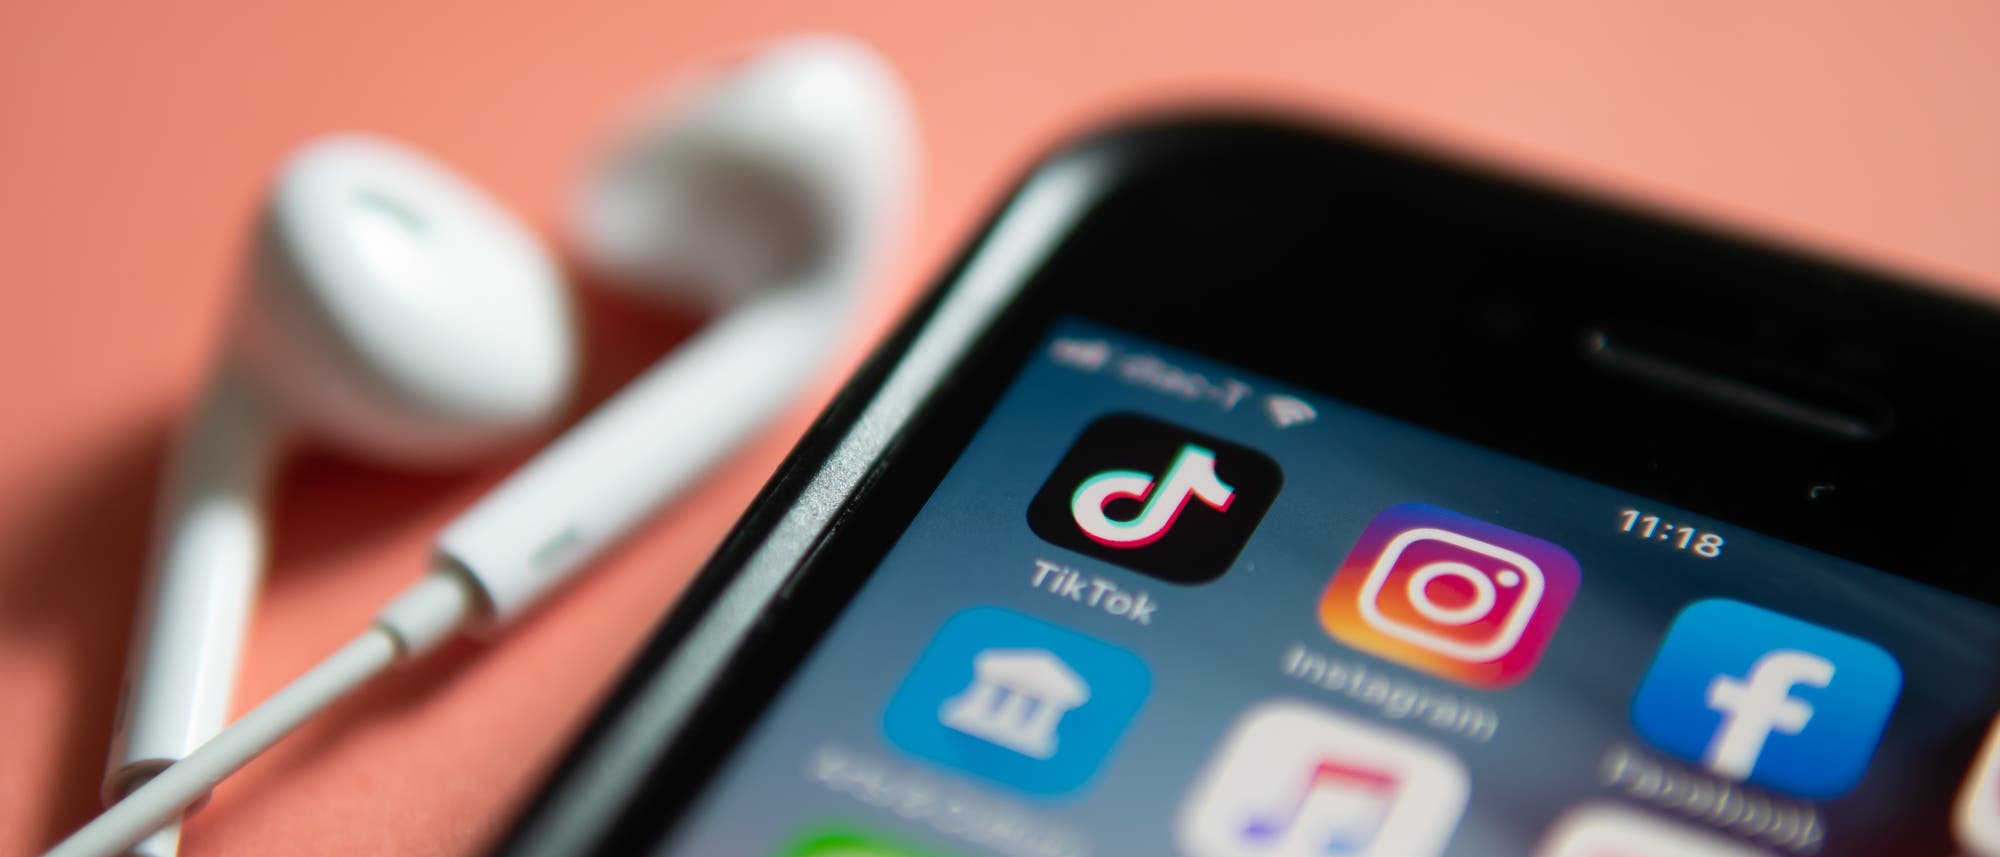 Smartphone in der Nahaufnahme vor rosafarbenem Hintergrund. Auf dem Bildschirm sind die Symbole verschiedener Apps zu sehen, darunter die von TikTok und Instagram. Neben dem Smartphone befinden sich weiße In-Ear-Kopfhörer.